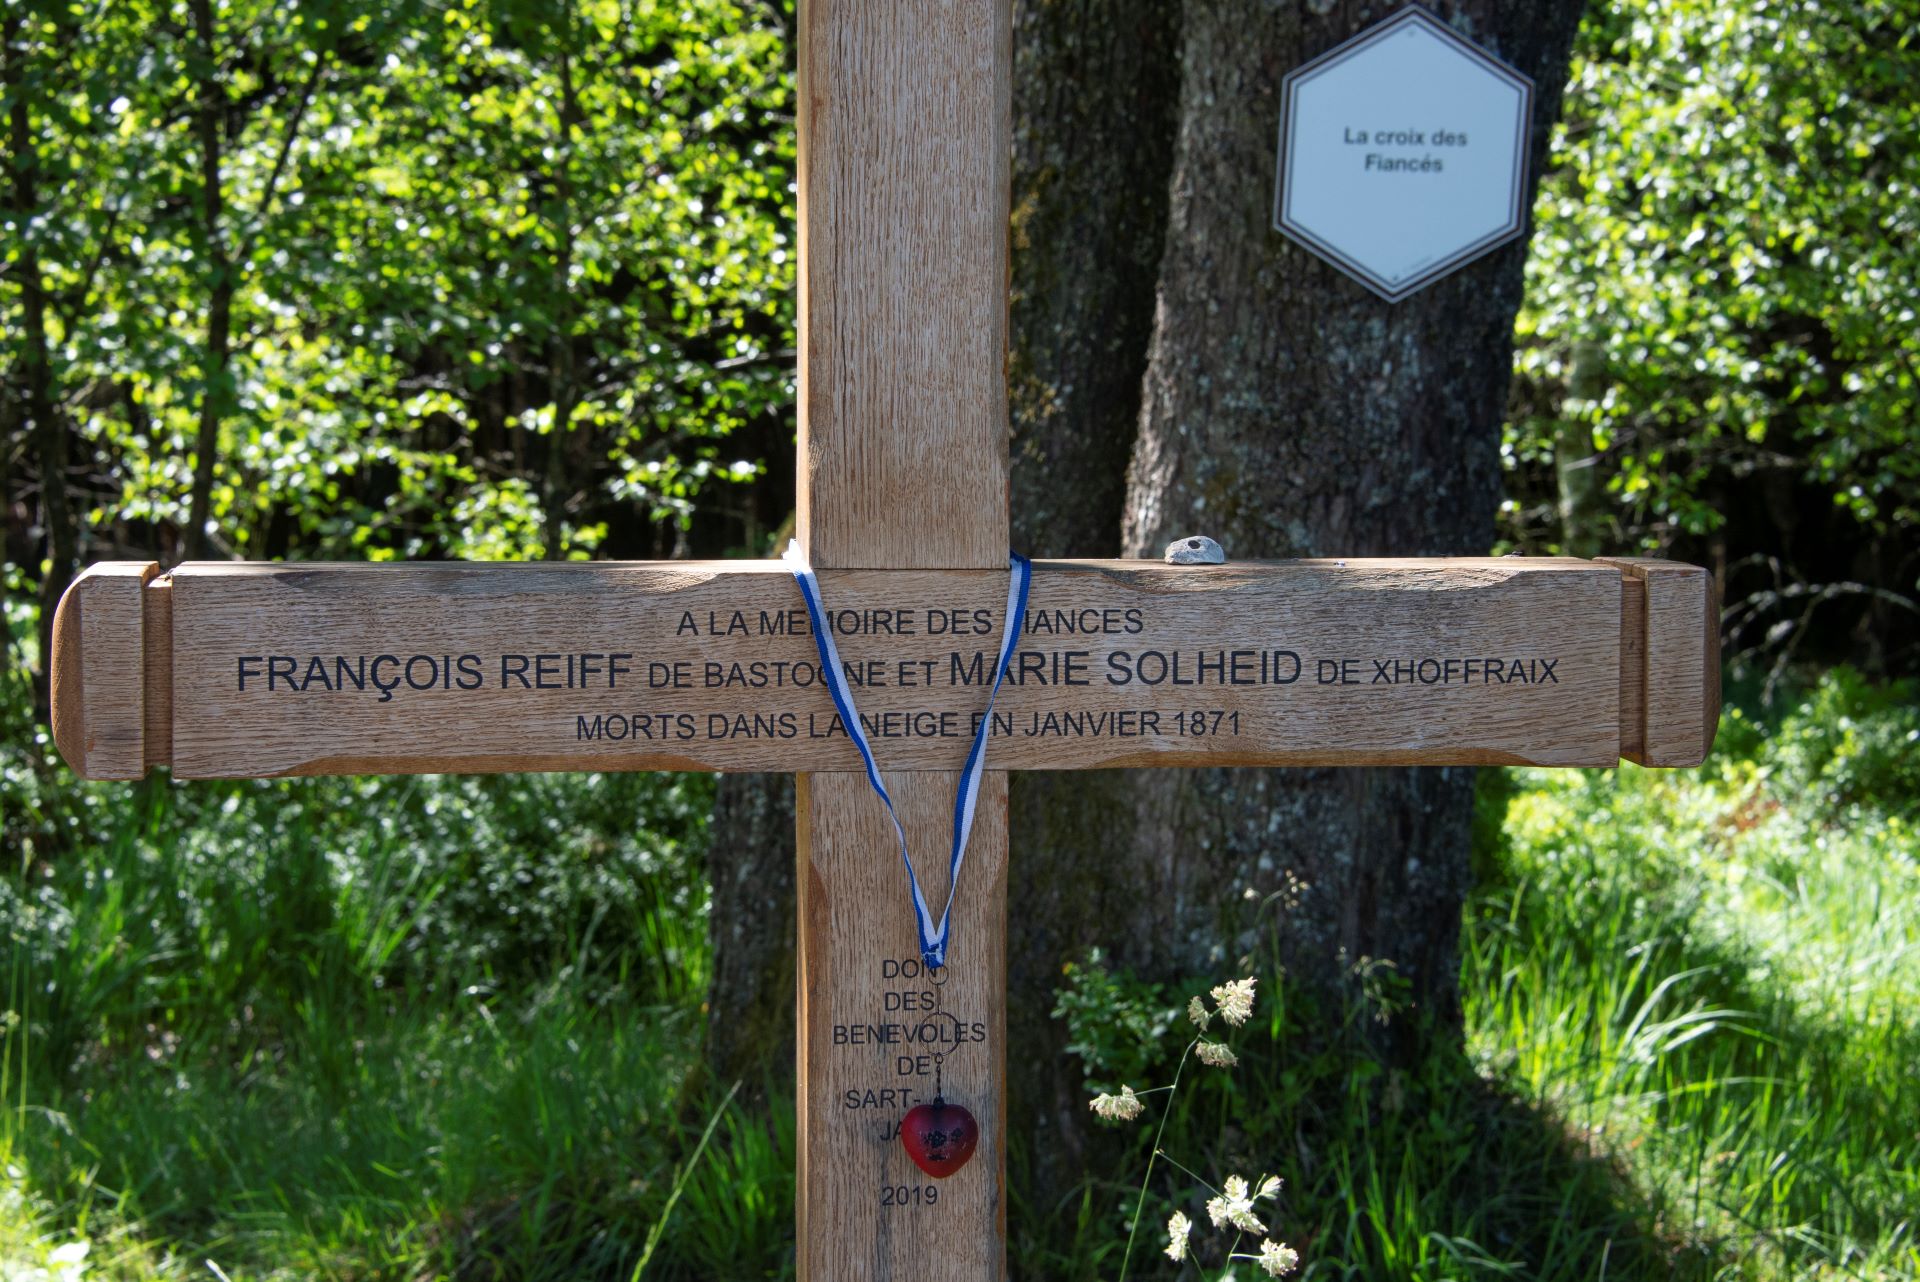 Au centre se trouve une croix portant les noms du célèbre personnage historique François Reiff. Il est situé entre les arbres.